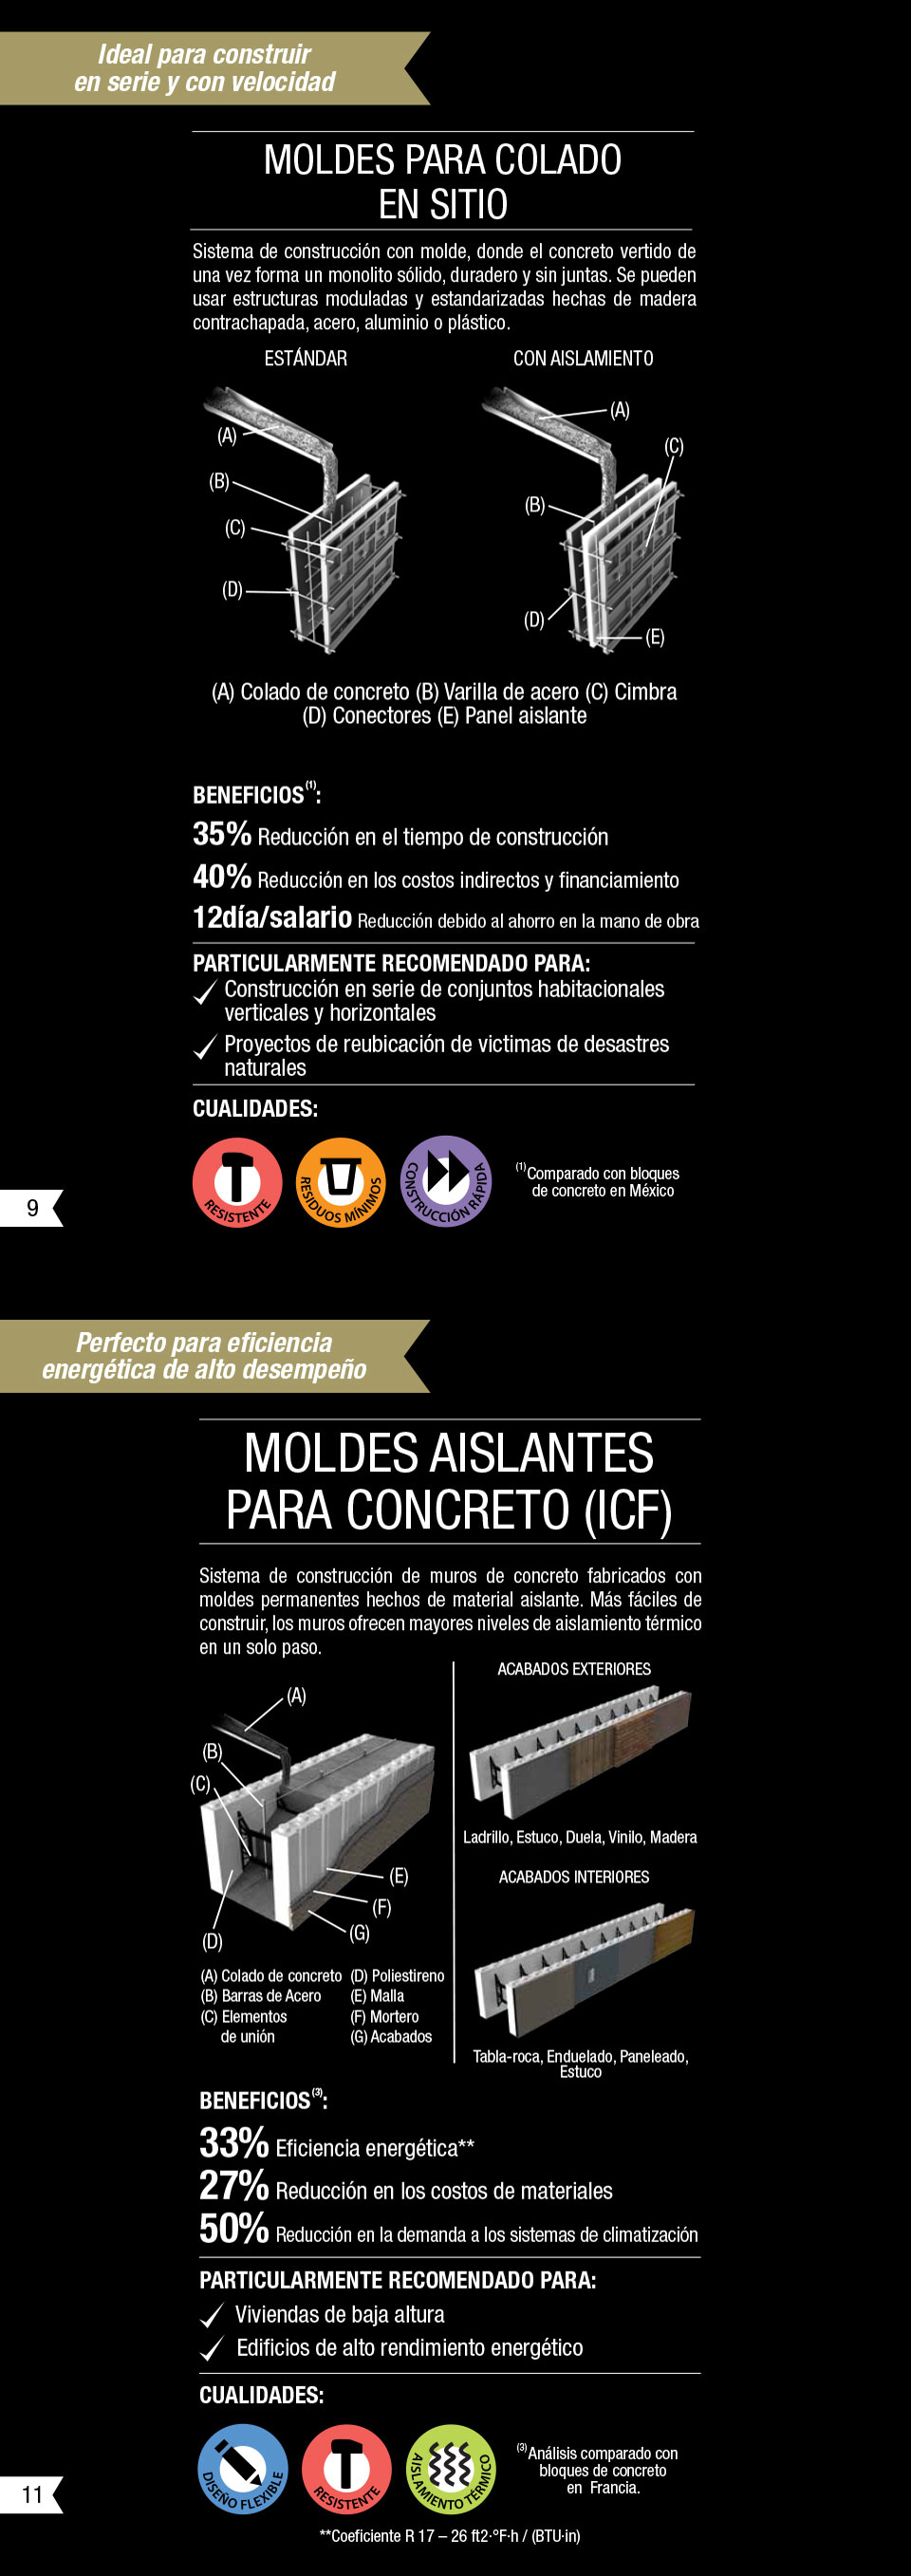 Una imagen que describe los beneficios y cualidades de los moldes para el colado y de otros moldes para la construcción.